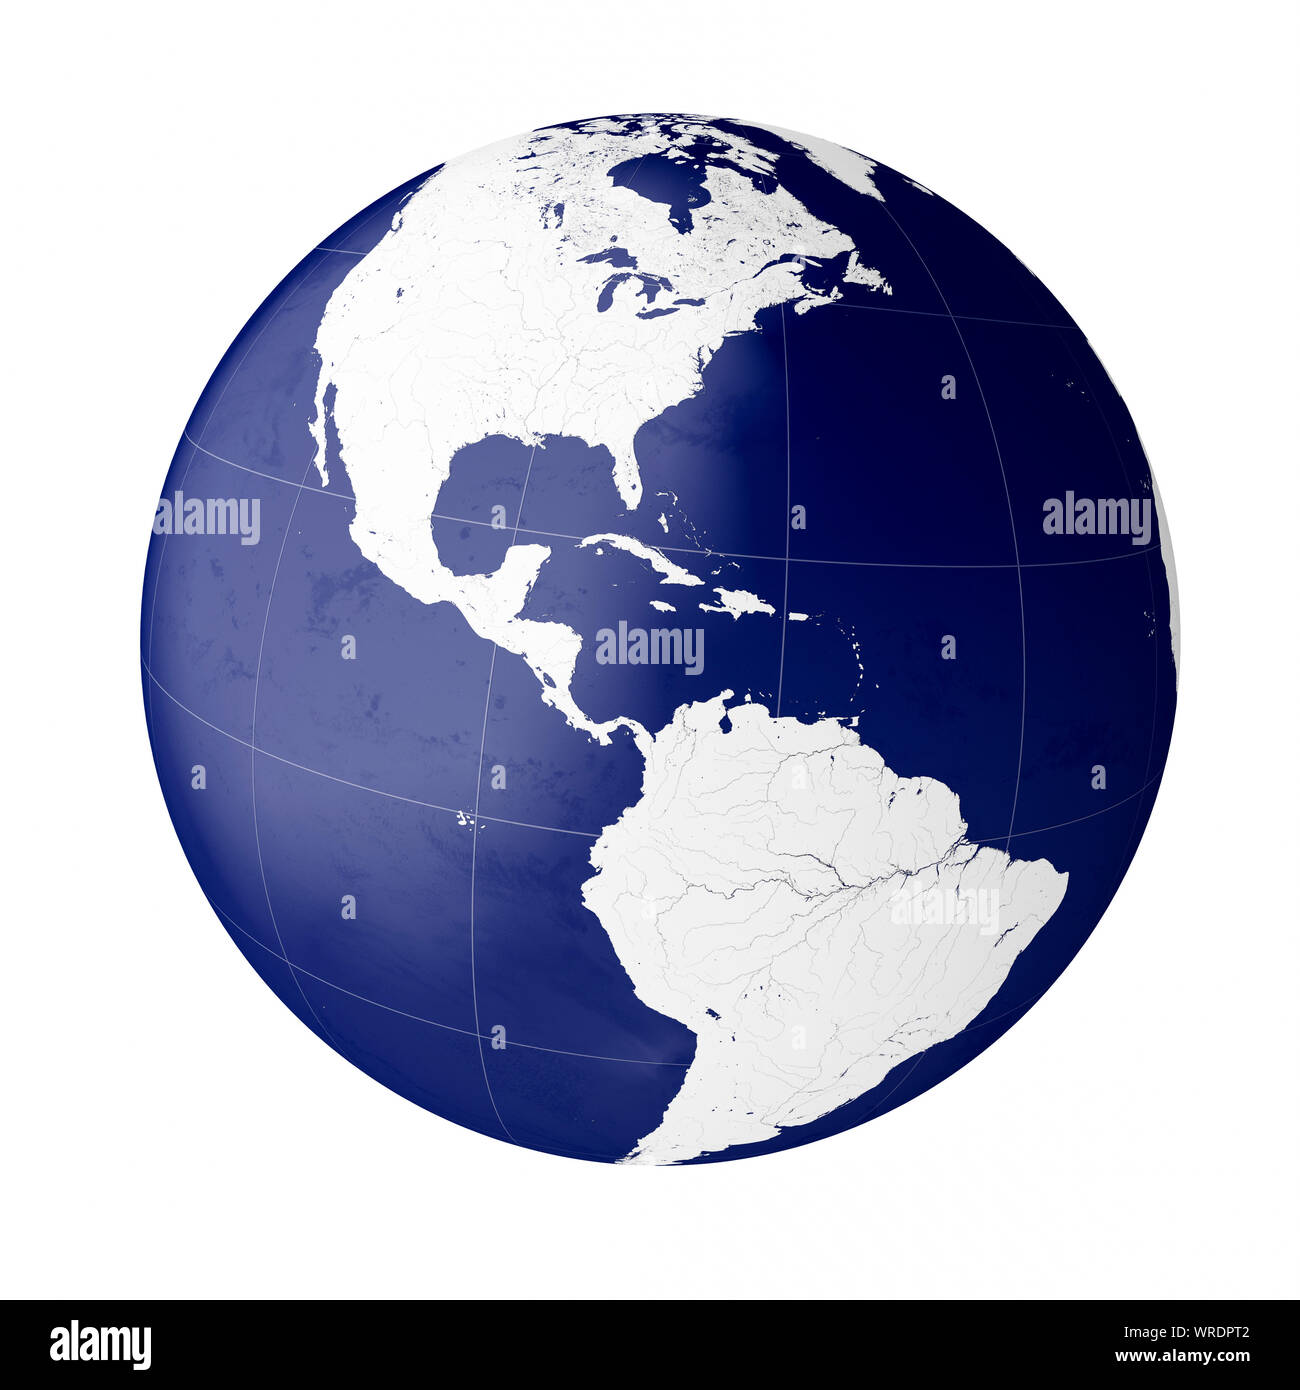 Weltweit, in Nord- und Südamerika (Kontinente Nordamerika und Südamerika) auf dem Planeten Erde Stockfoto